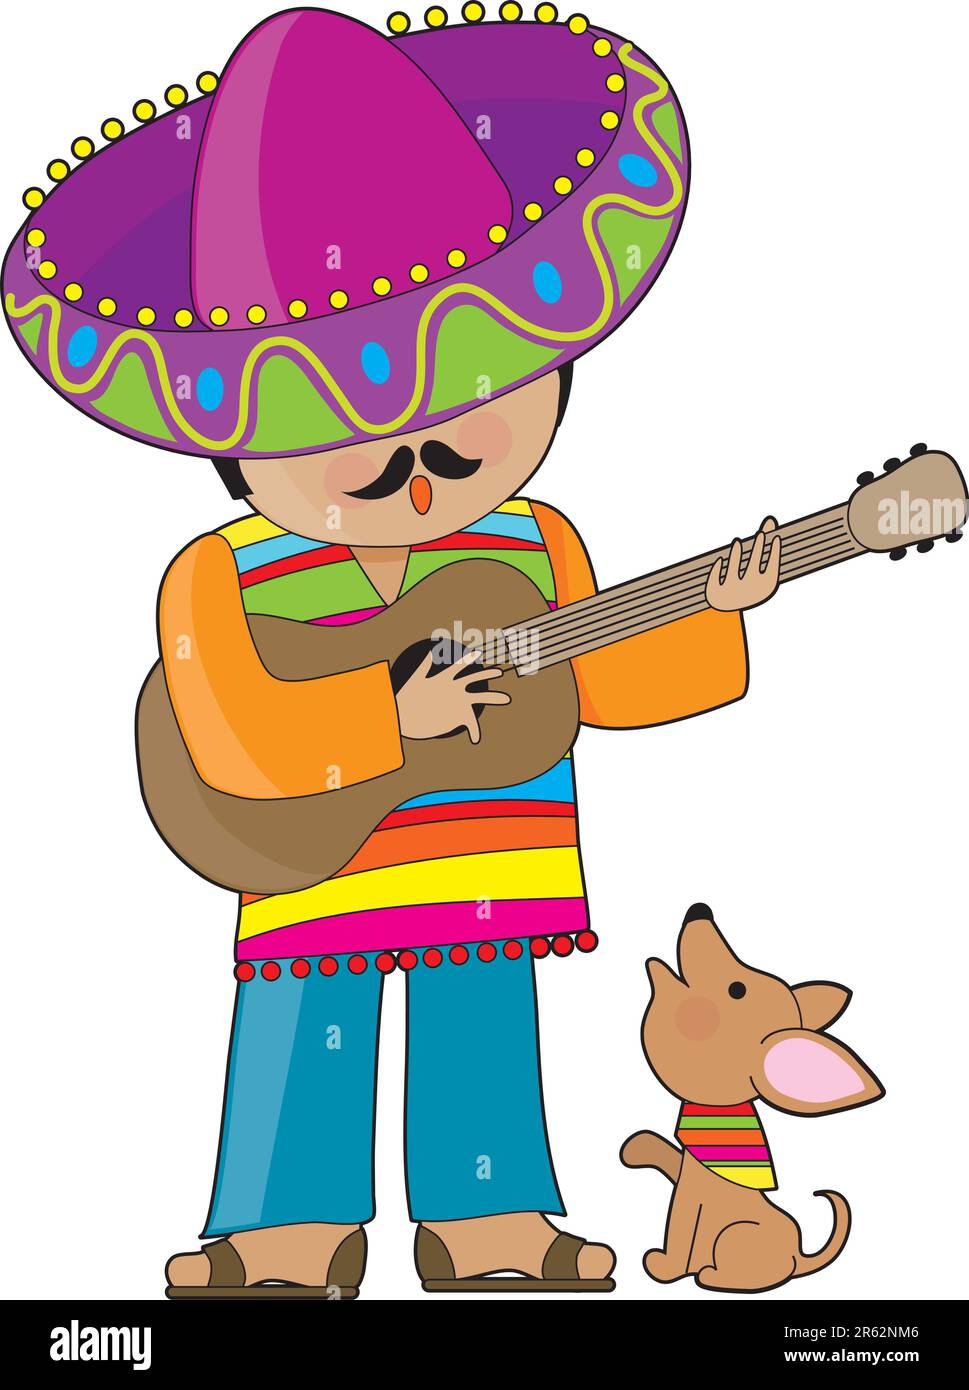 Un homme mexicain jouant de la guitare et serenradant son petit chihuahua Illustration de Vecteur